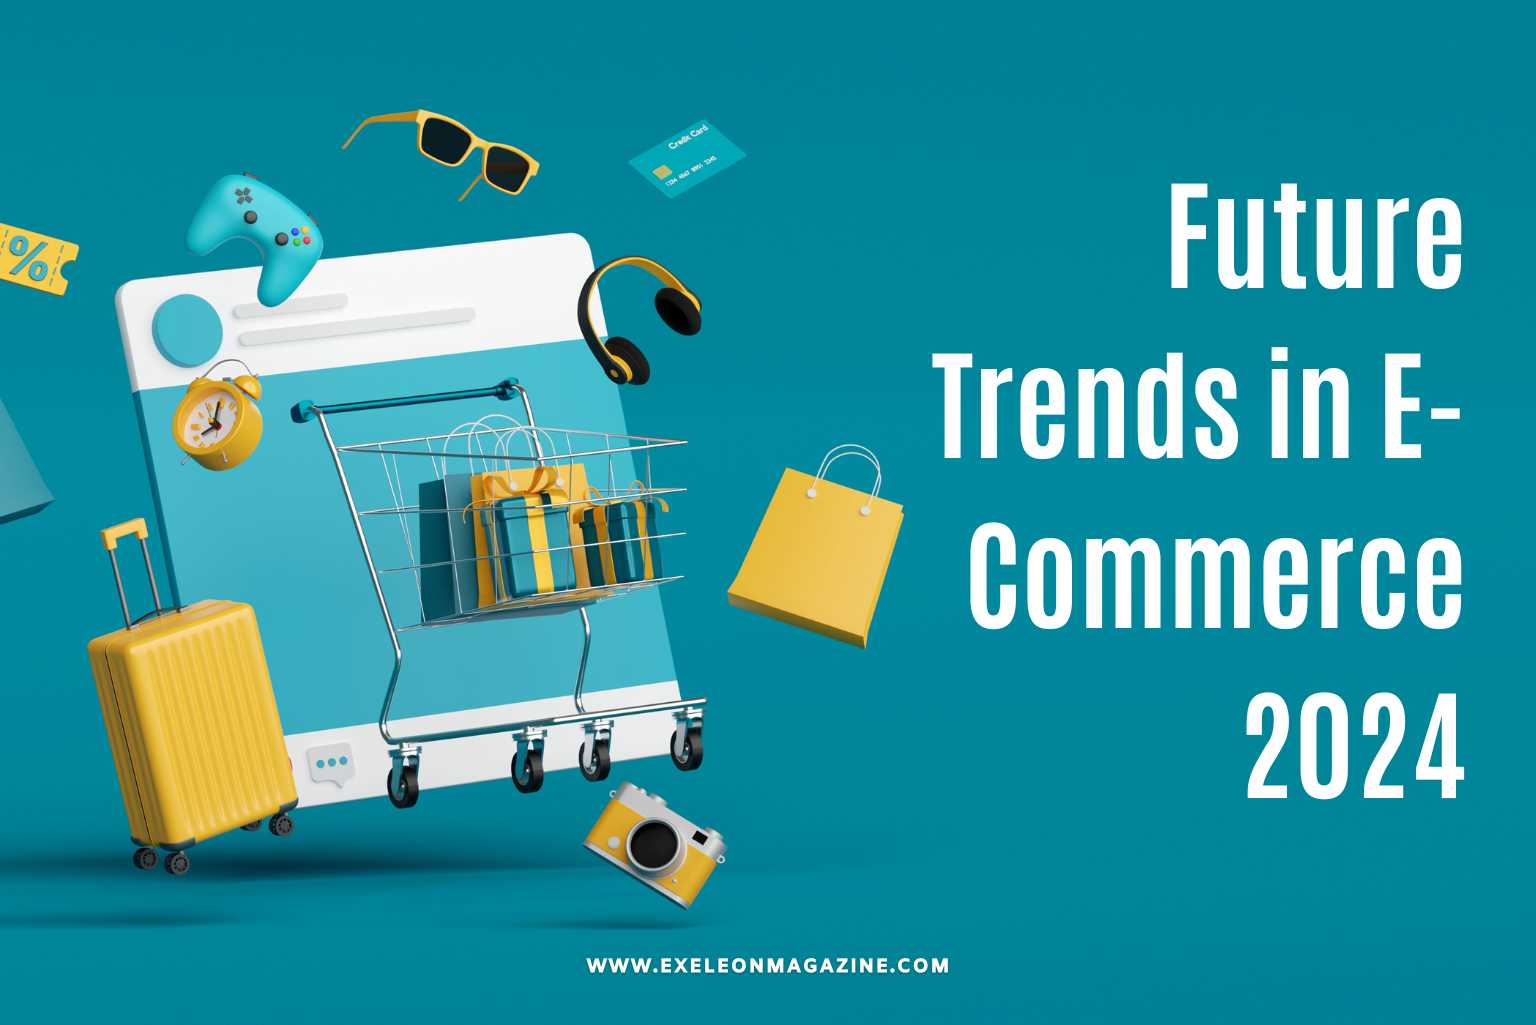 Future Trends in E-Commerce